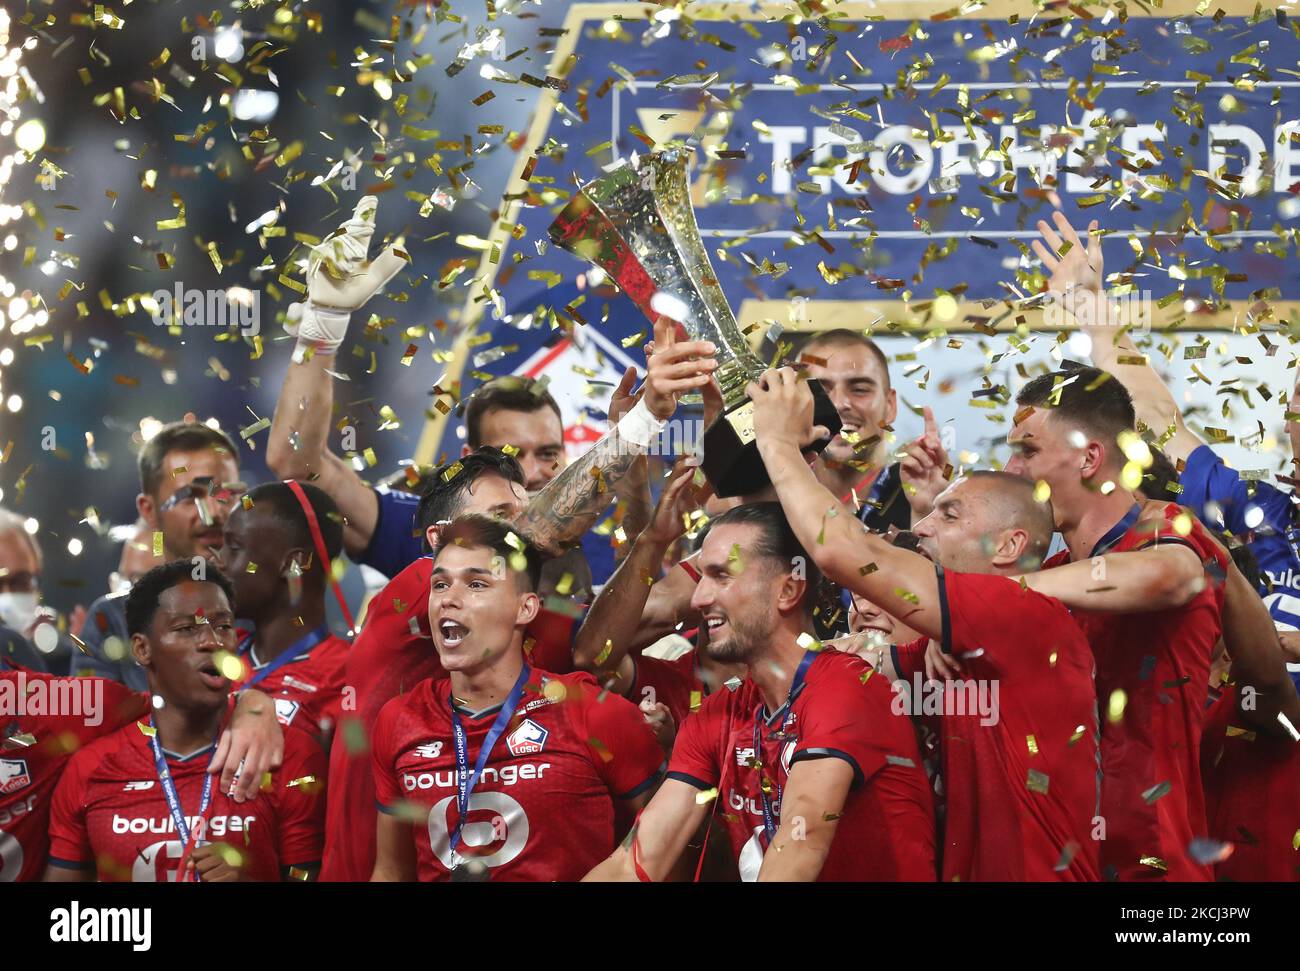 Ligue des champions : le trophée exposé au cœur de Paris